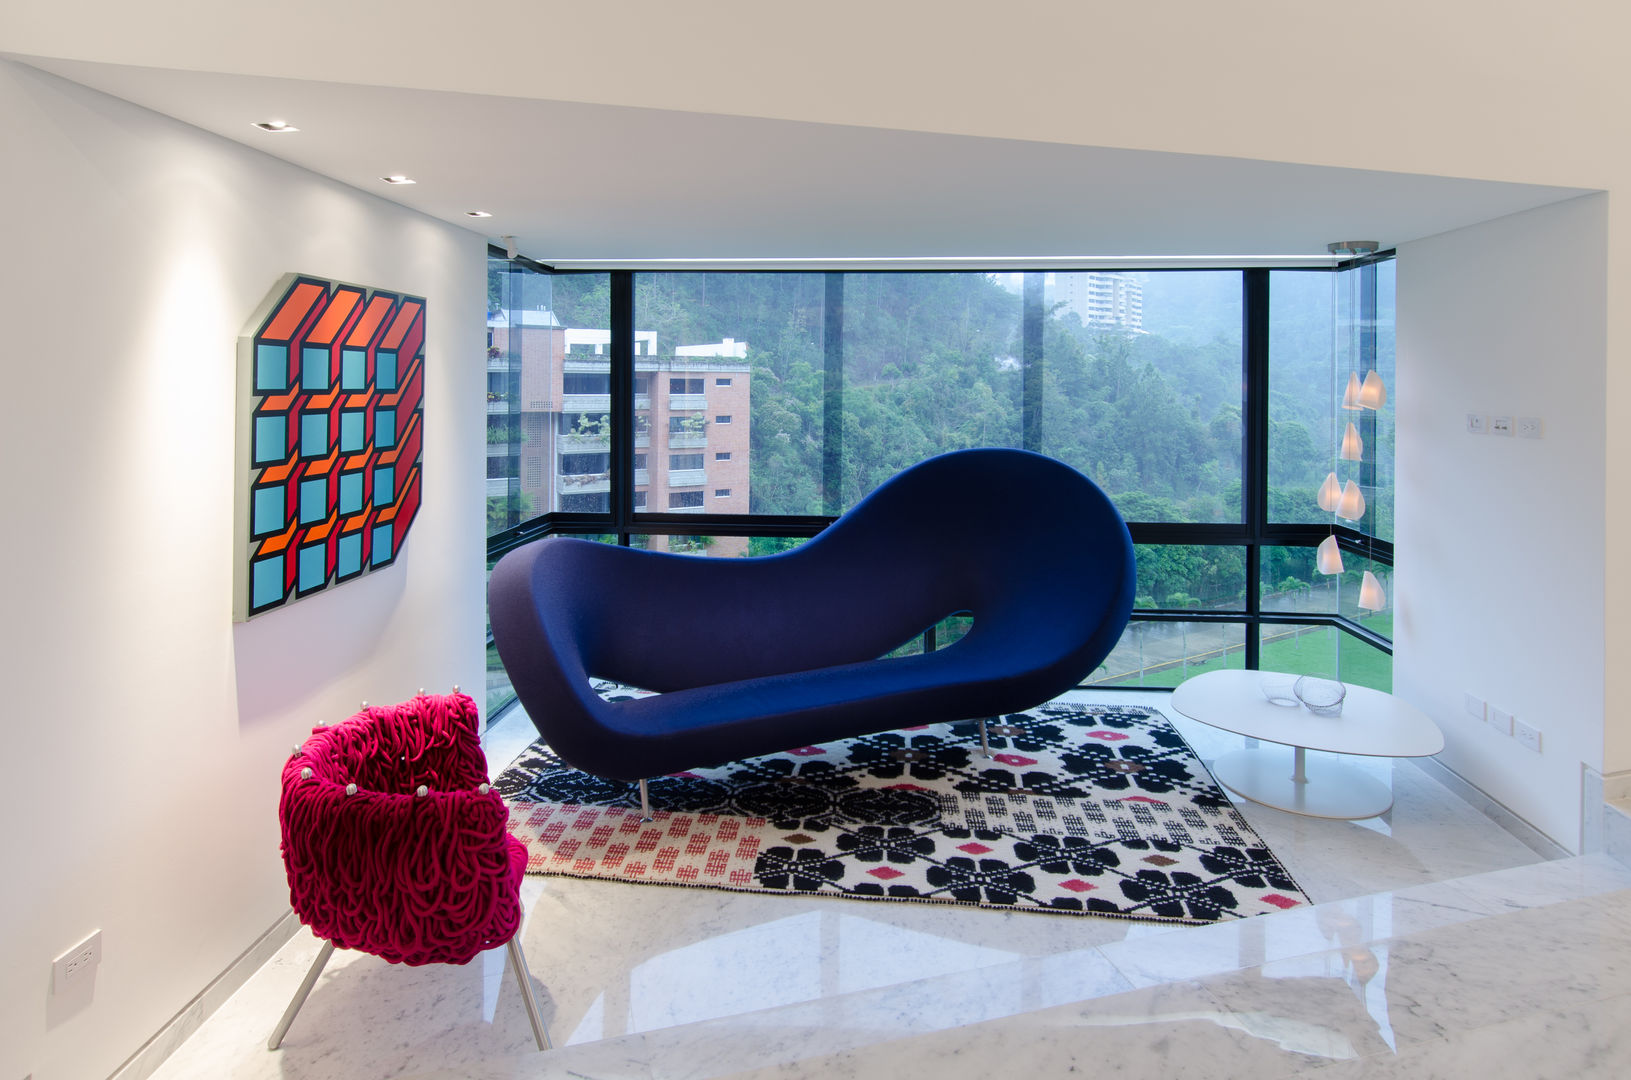 LA LAGUNITA, Design Group Latinamerica Design Group Latinamerica Salones de estilo moderno Sofás y sillones